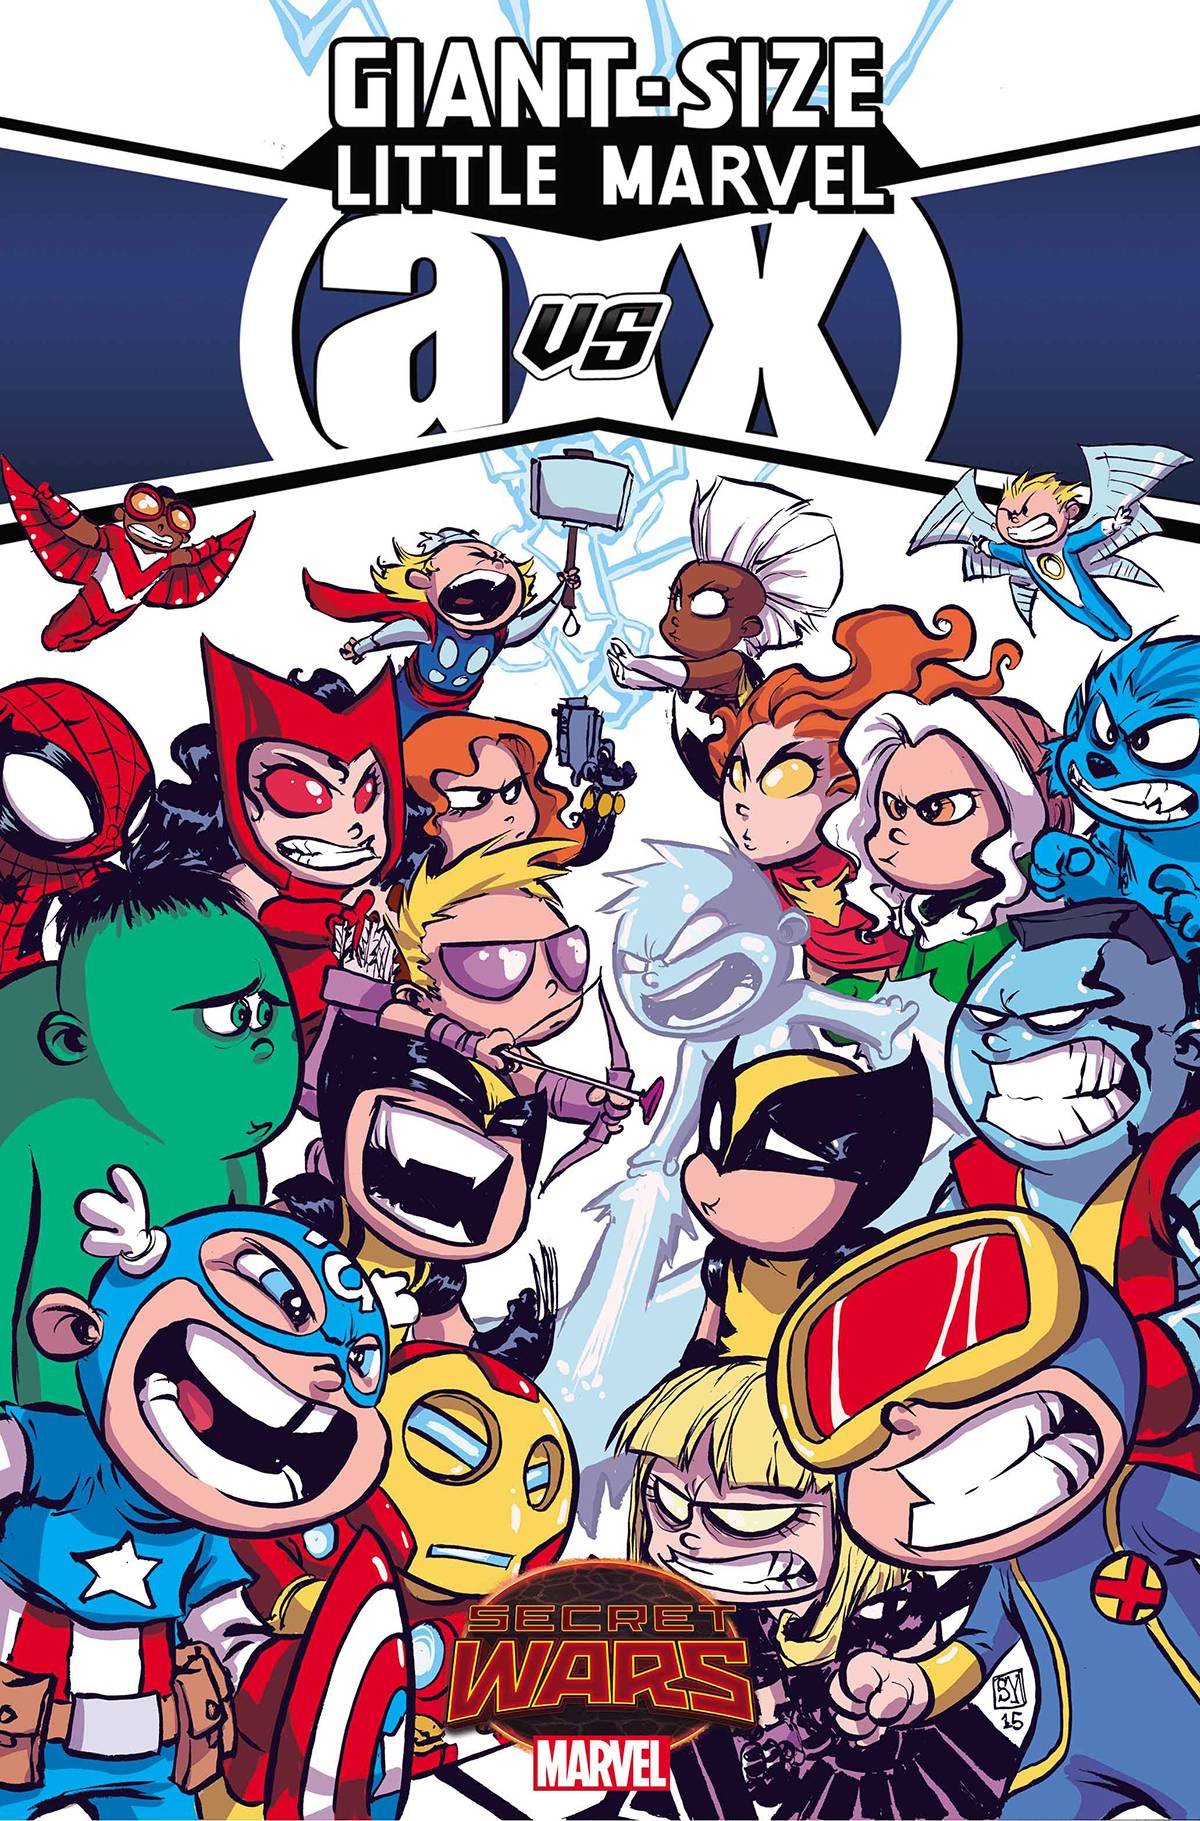 Giant-Size Little Marvel Avx #1 (2015)